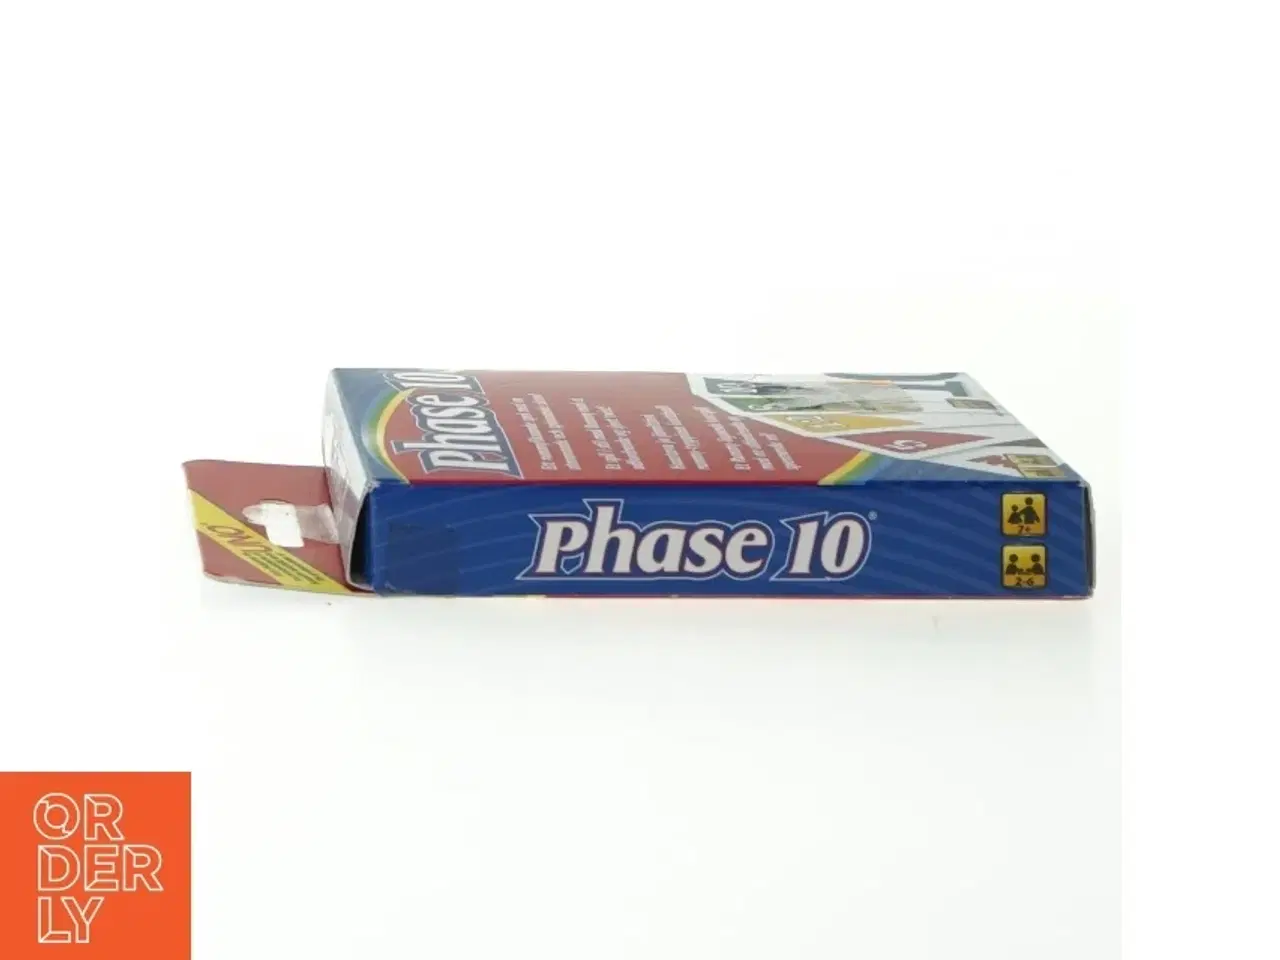 Billede 4 - Phase 10 uno fra Mattel (str. 15 x 9 cm)